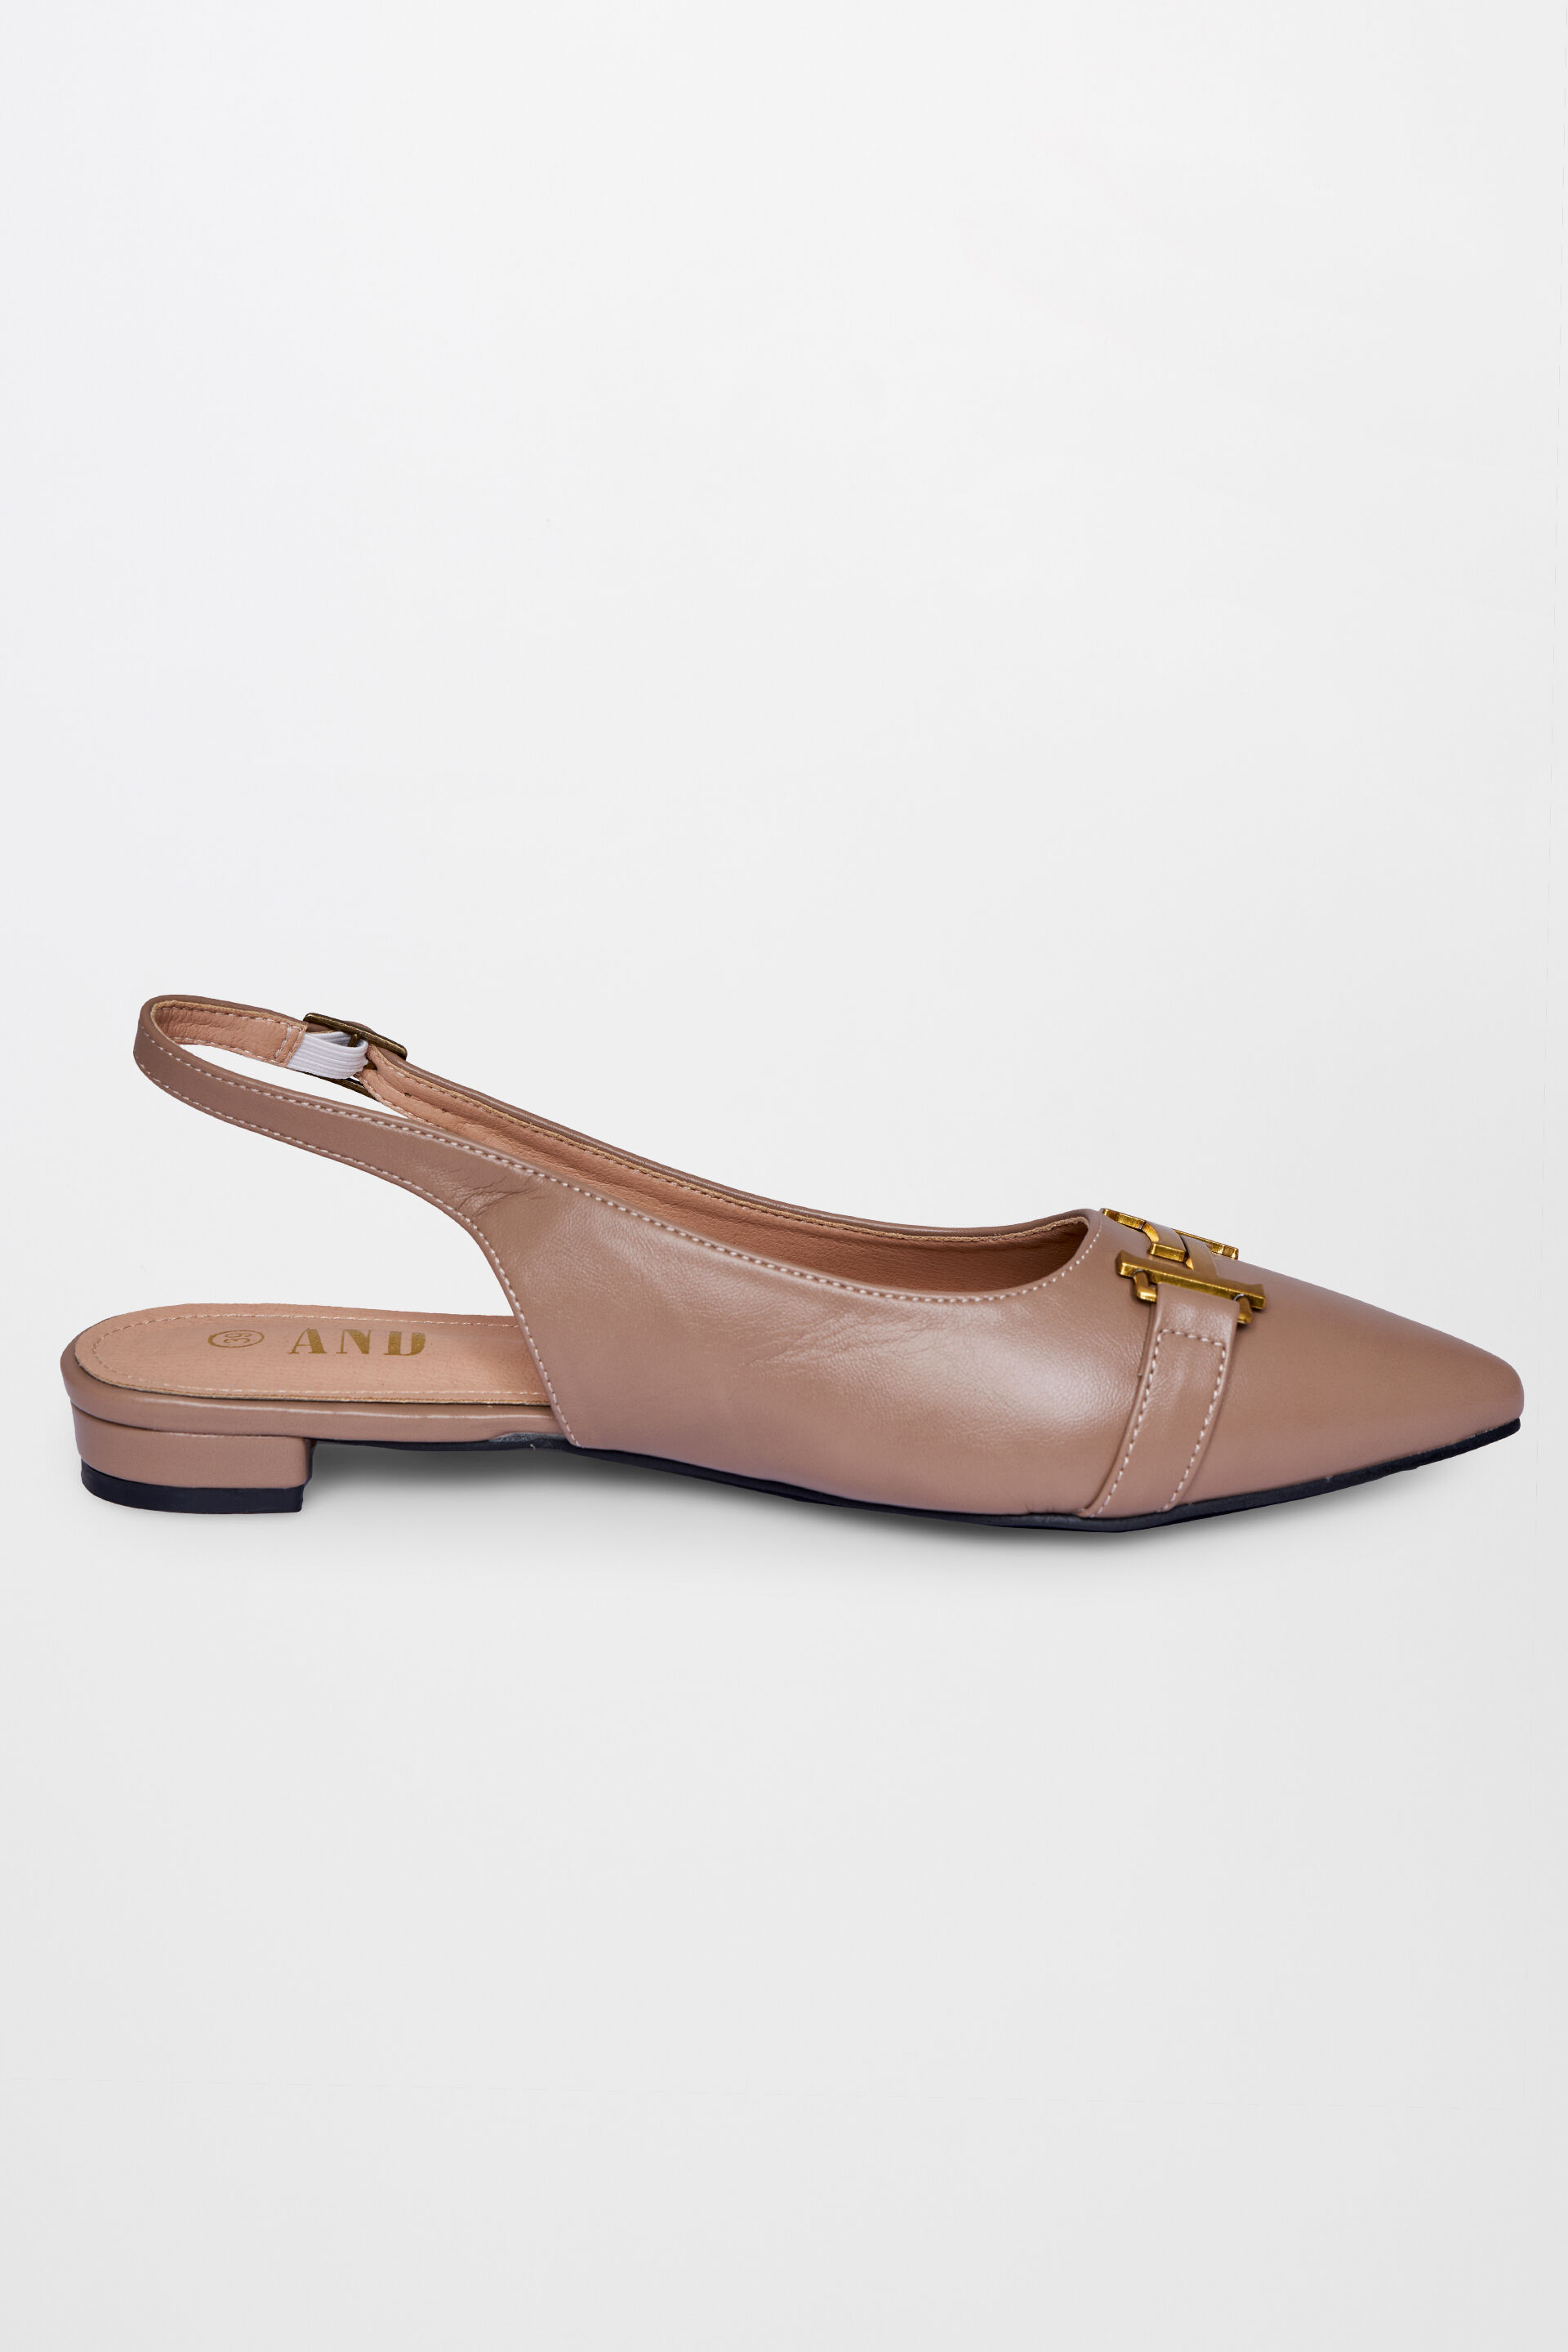 Tan Comfort Slip on Block Heels N91229 - Pepitoes